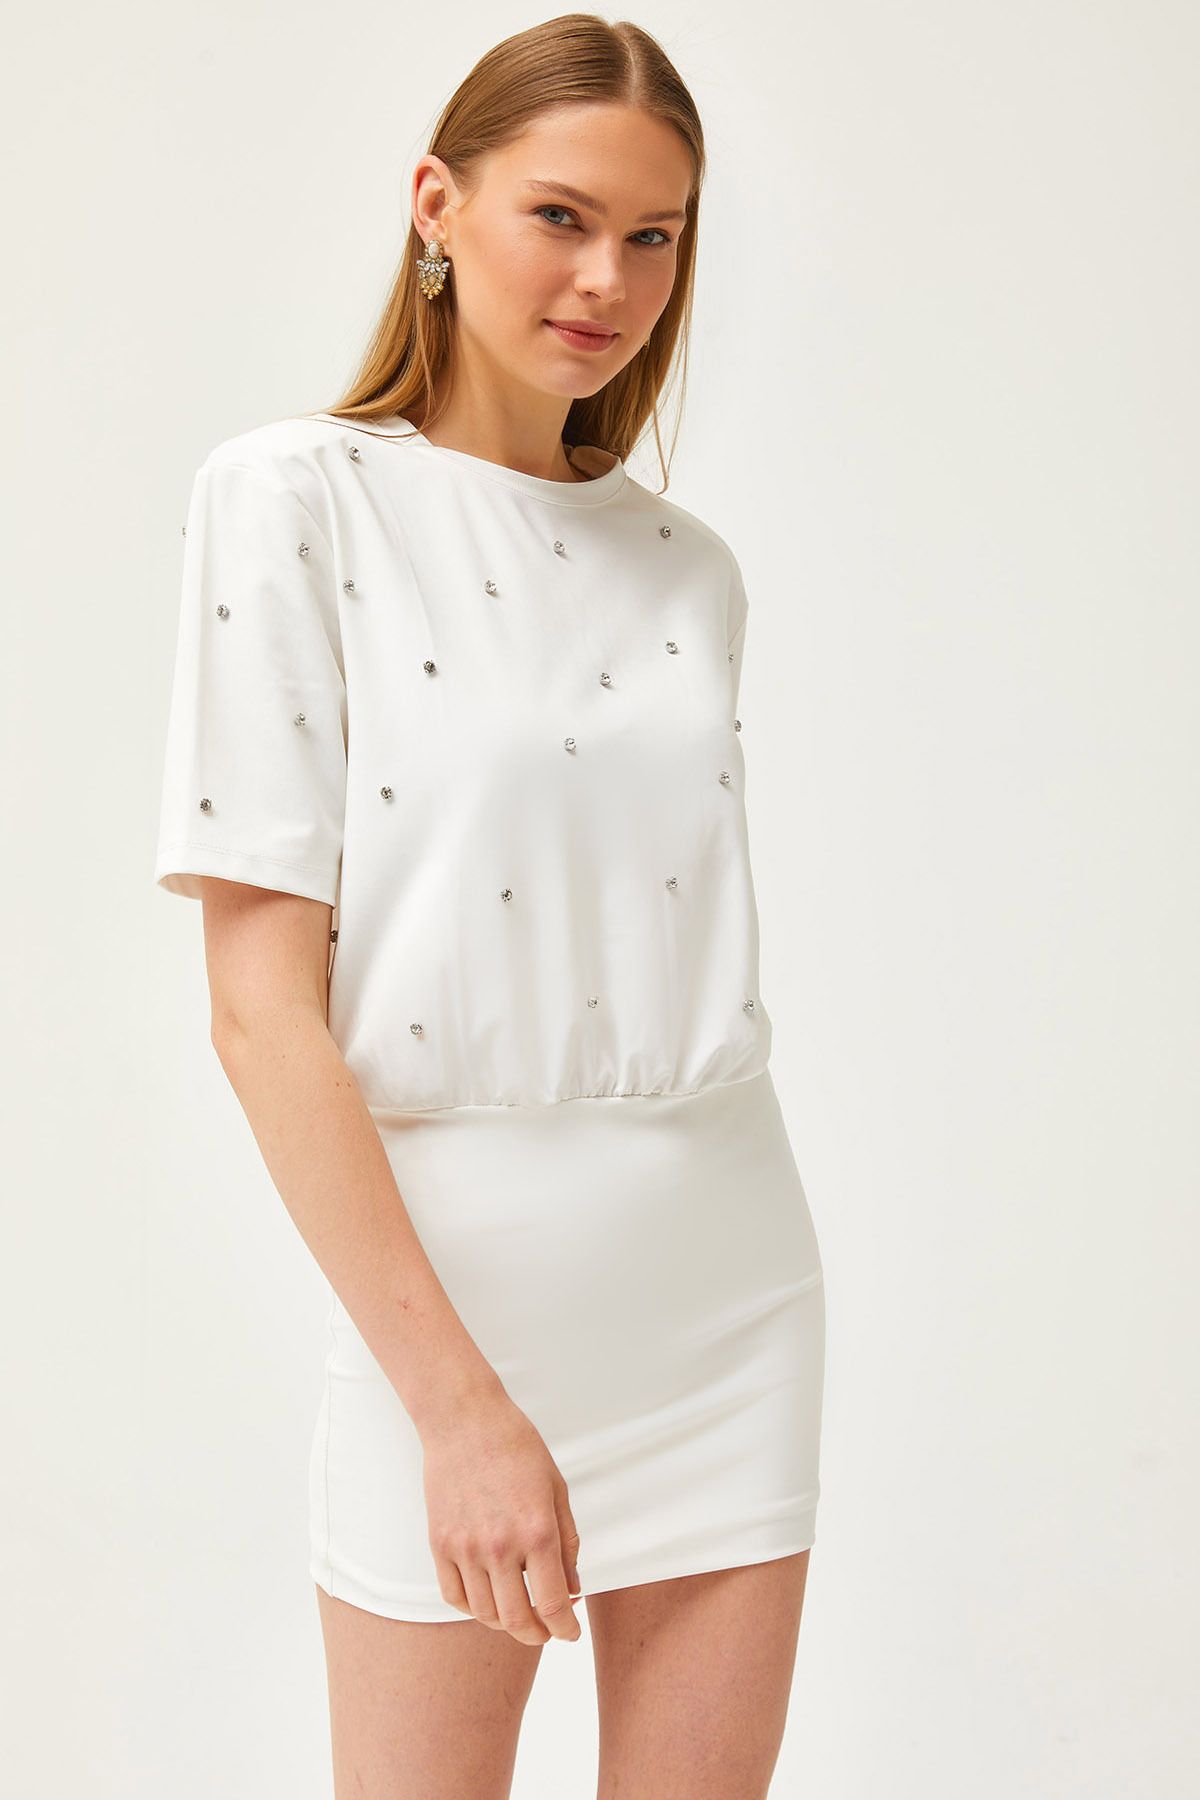 Olalook Kadın Beyaz Eteği Çift Kat Vatkalı Taşlı Mini Elbise ELB-19002122